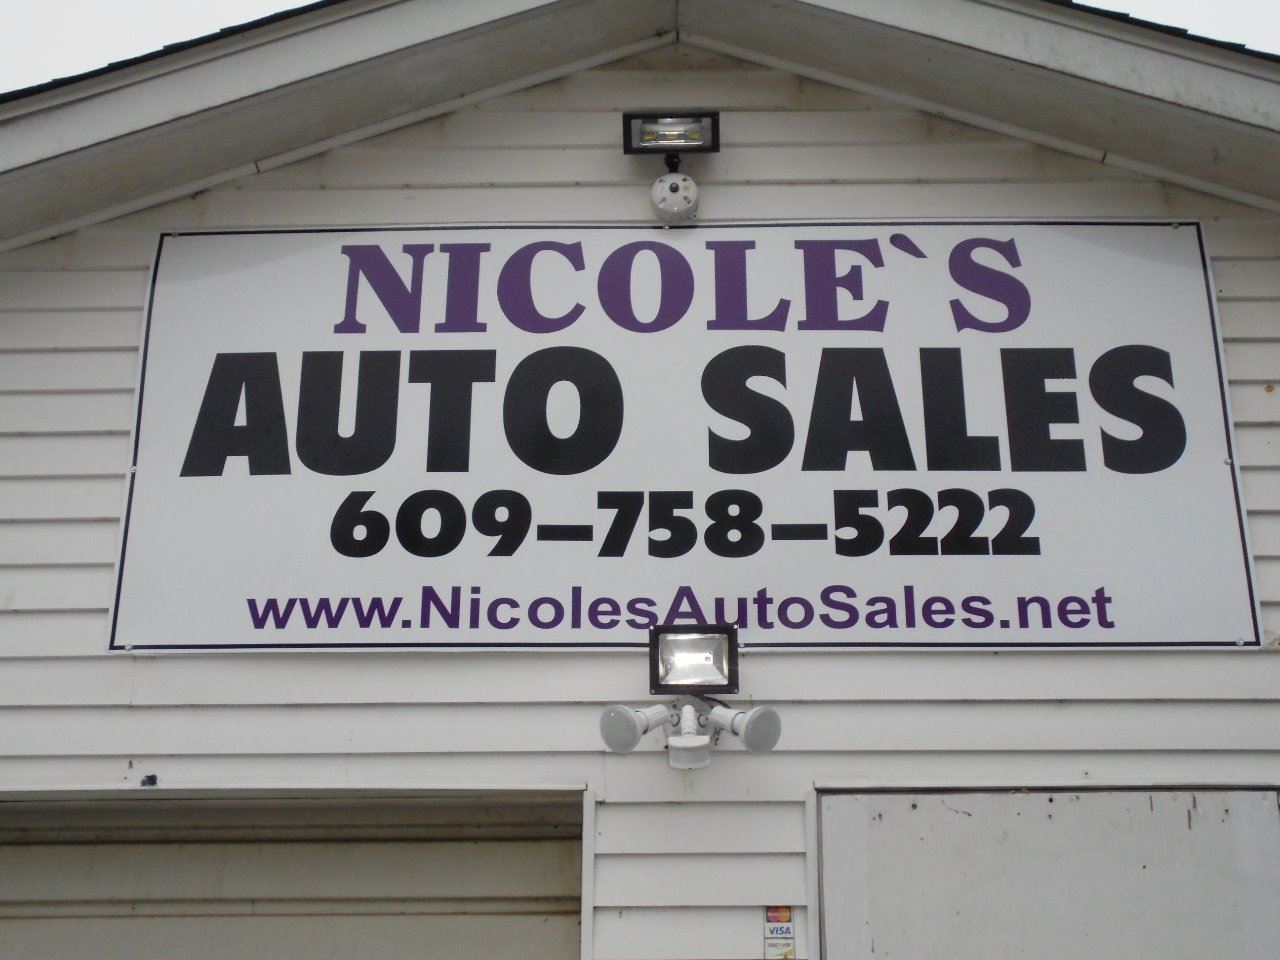 NICOLES AUTO SALES LLC